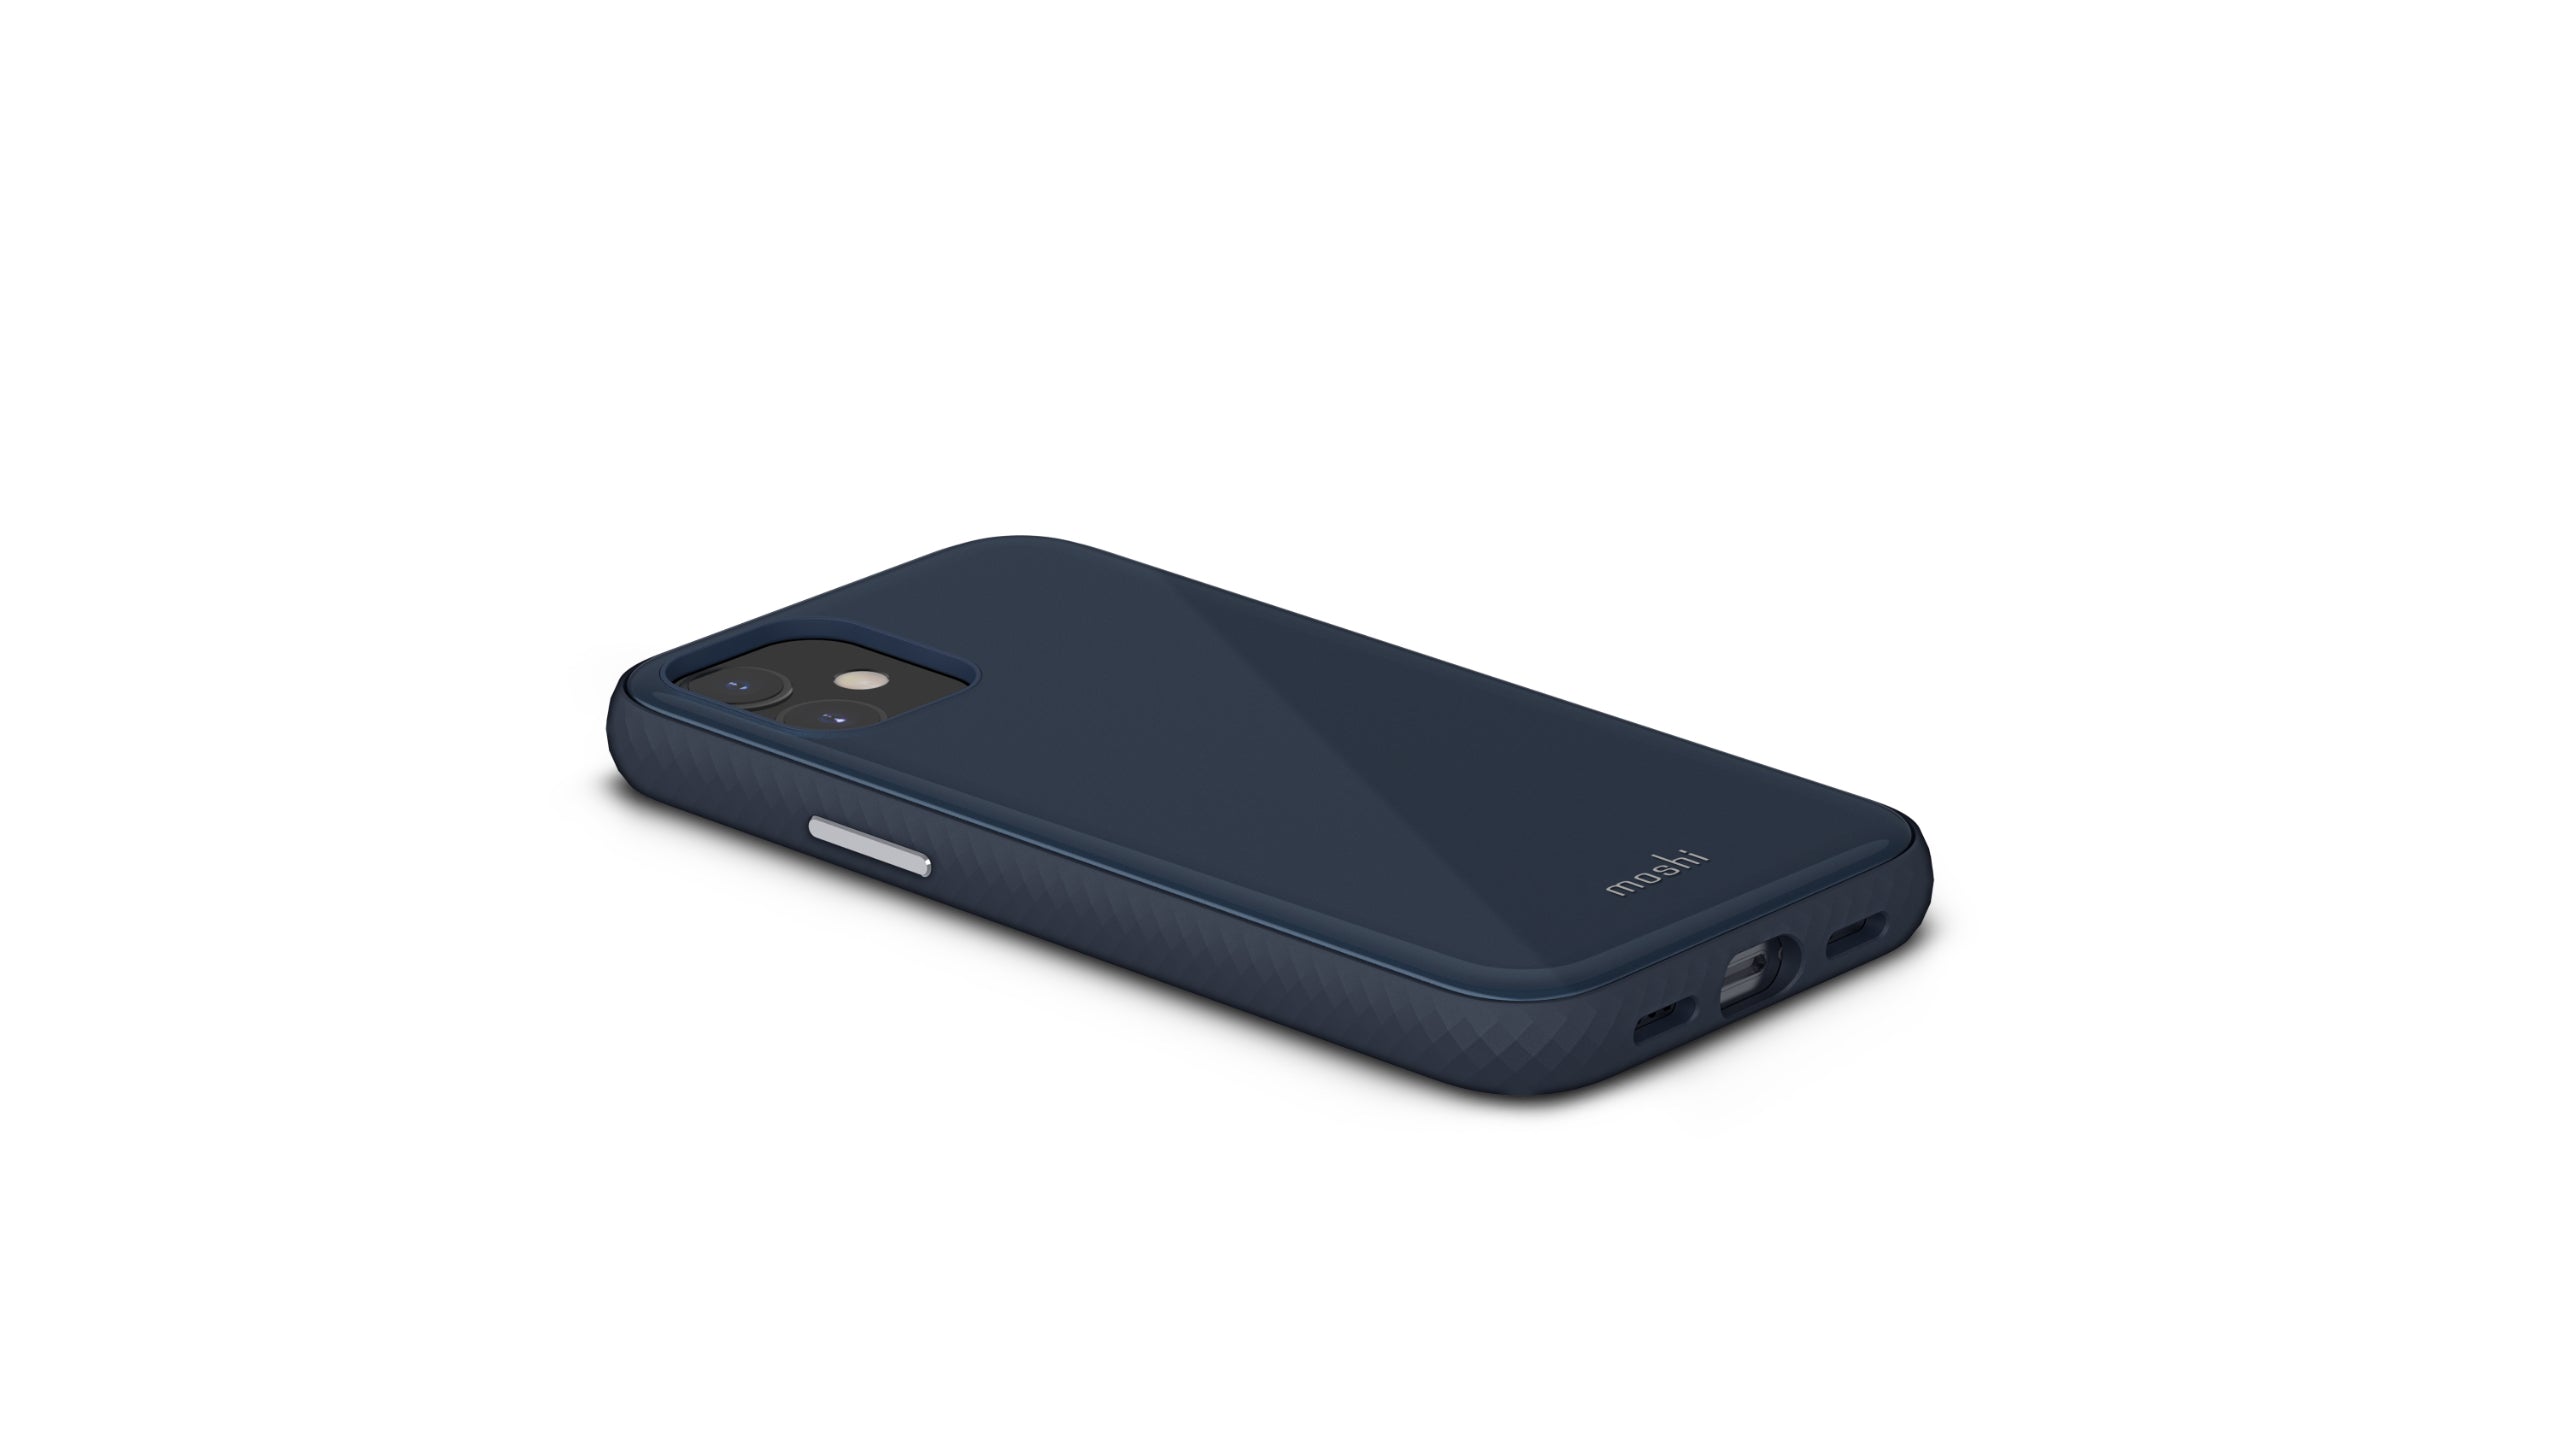 Moshi iGlaze Slim Hardshell Case for iPhone 12 Mini